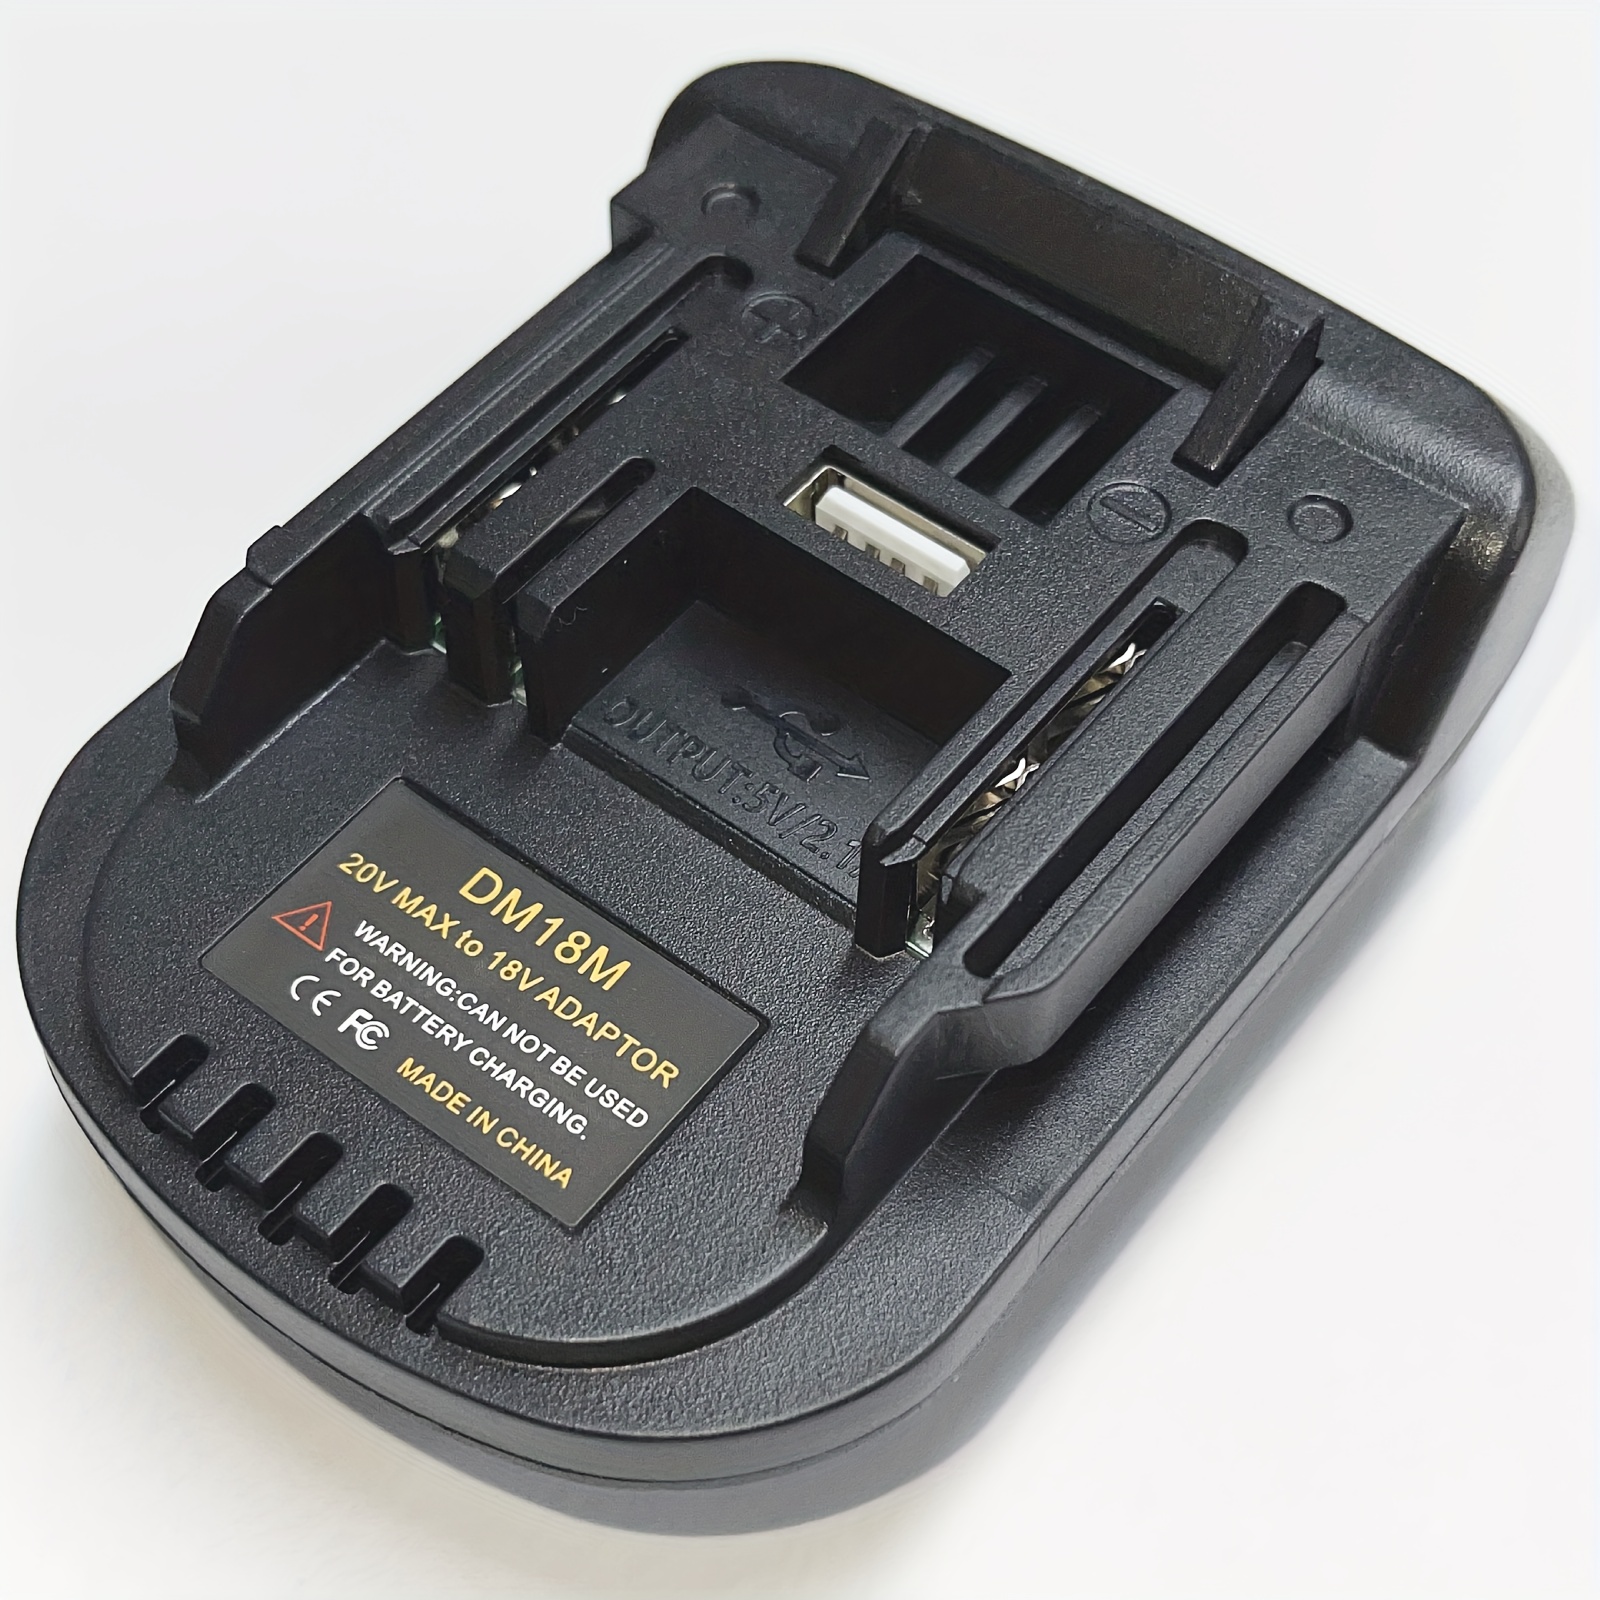 1pc Battery Adapter Converter Converts Dewalt 20V Li-ion Or Milwaukee M18  18V Li-ion Battery To Makita 18V Lithium Battery, For Makita 18V Slide Pack